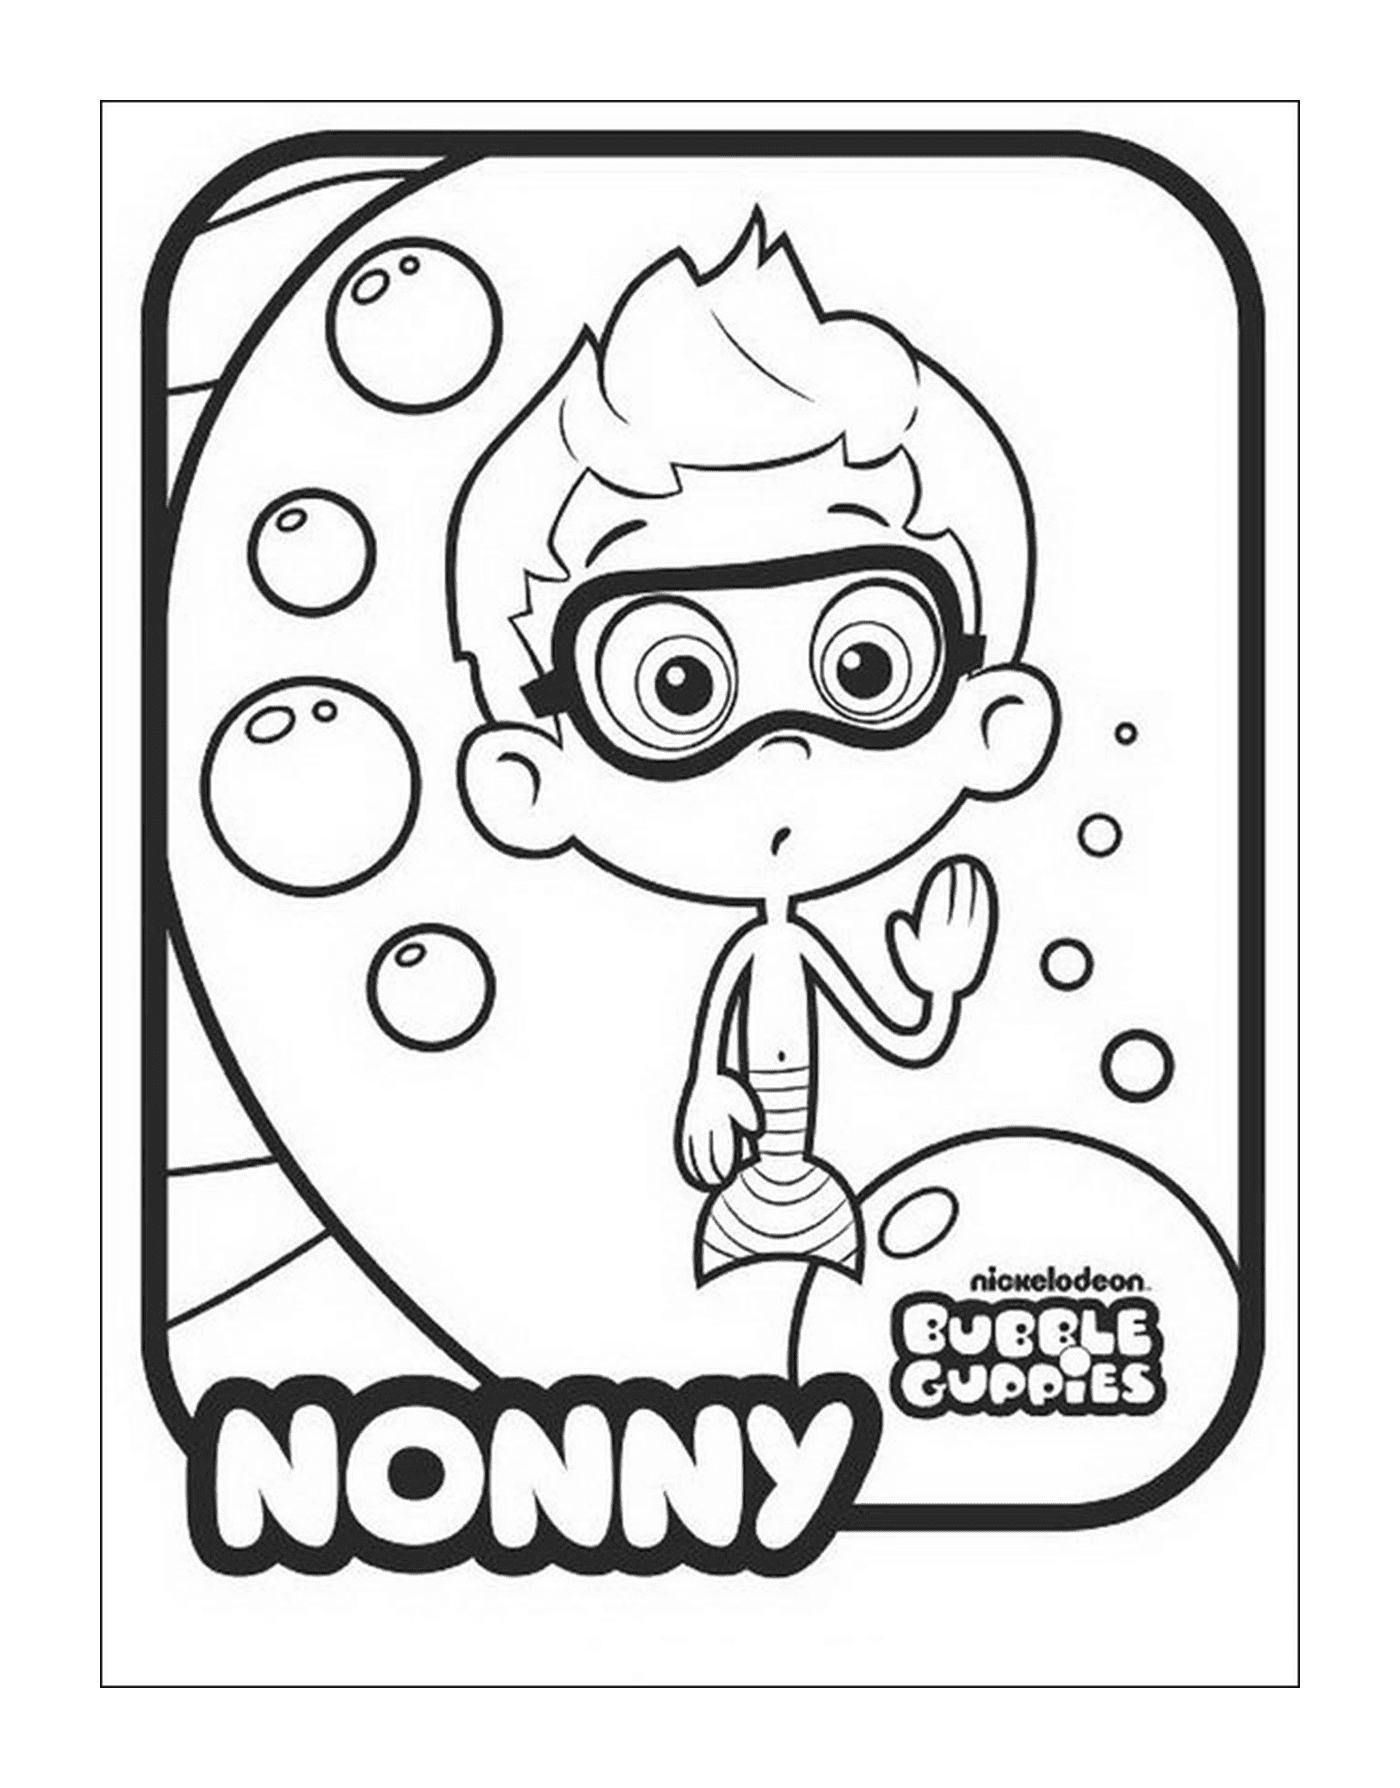  Nonny de los Bubble Guppies 